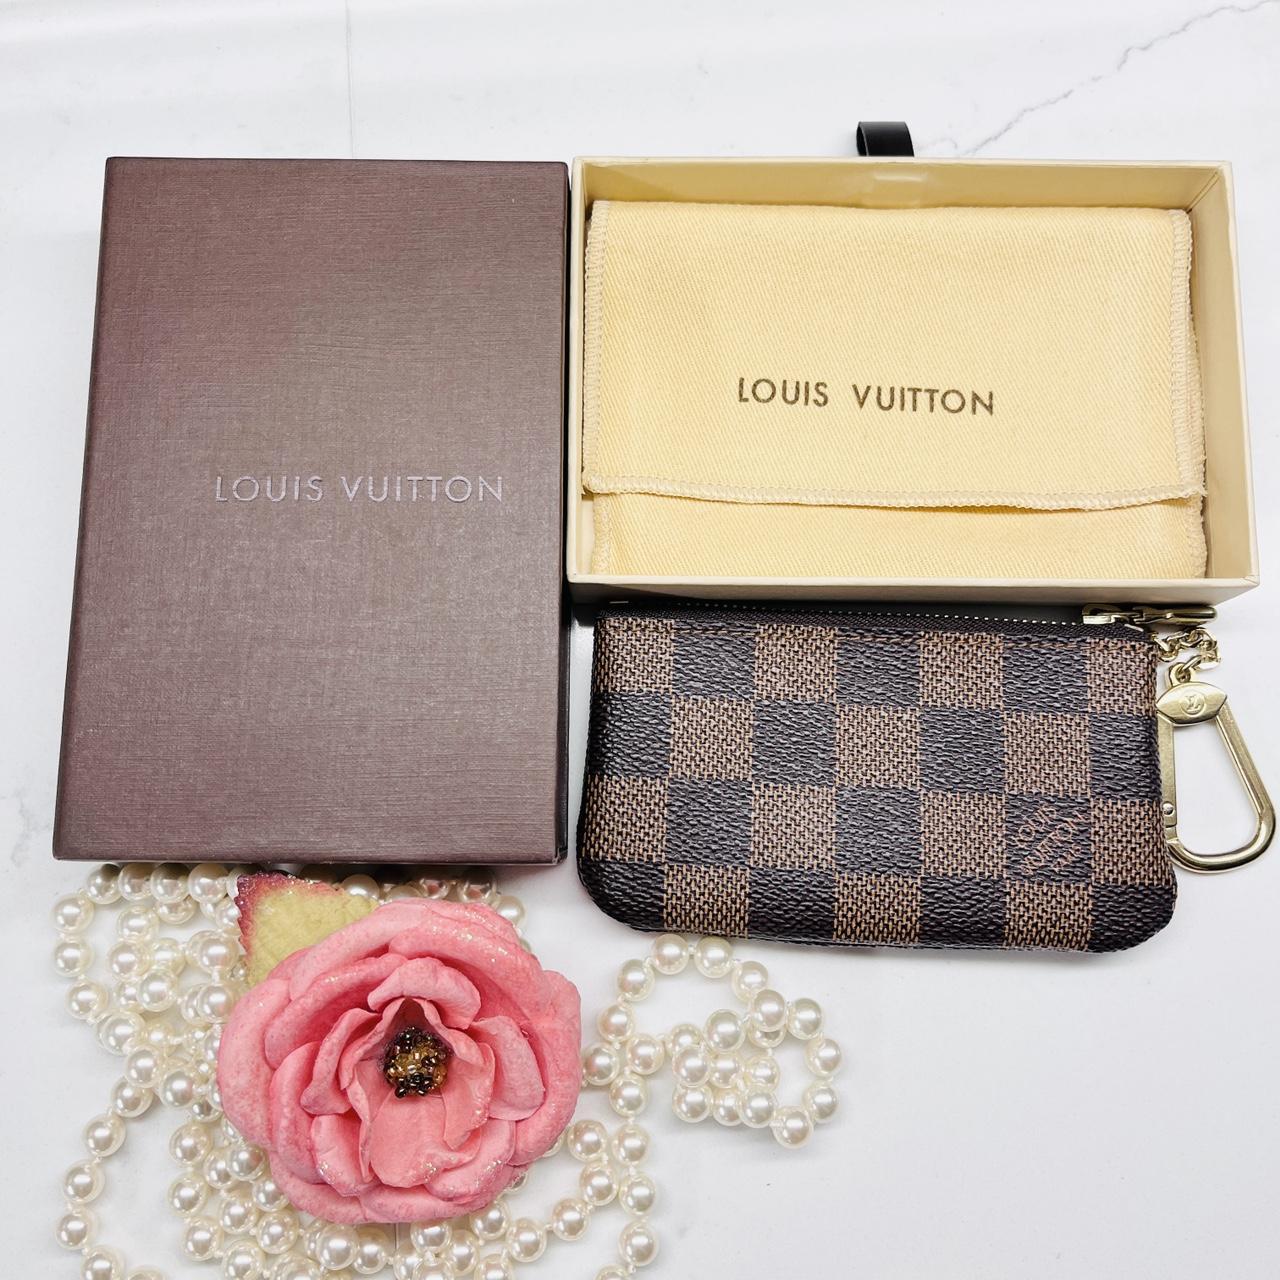 Louis Vuitton, Accessories, Po Cles Pm D Ebe